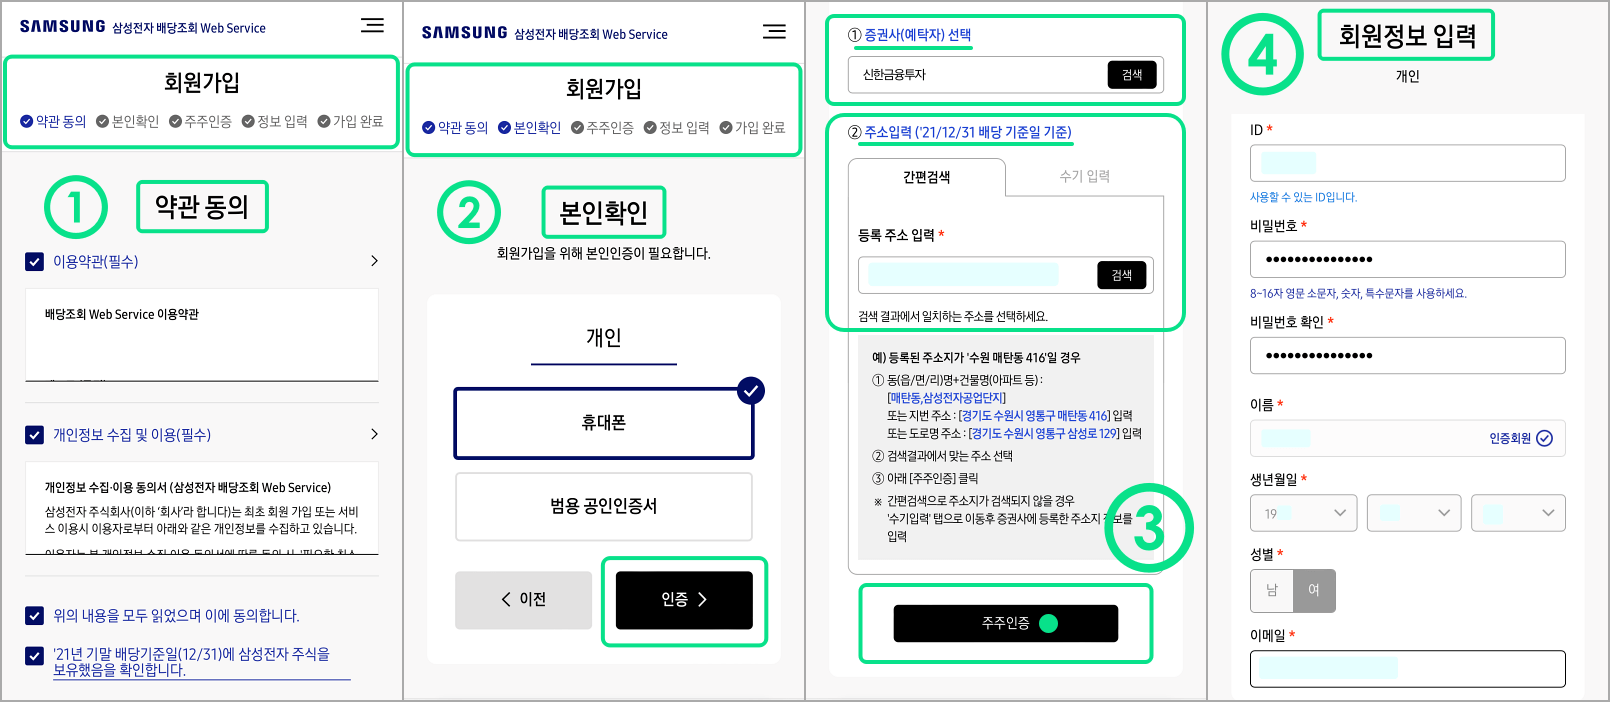 삼성전자웹서비스-가입5단계-캡처연결